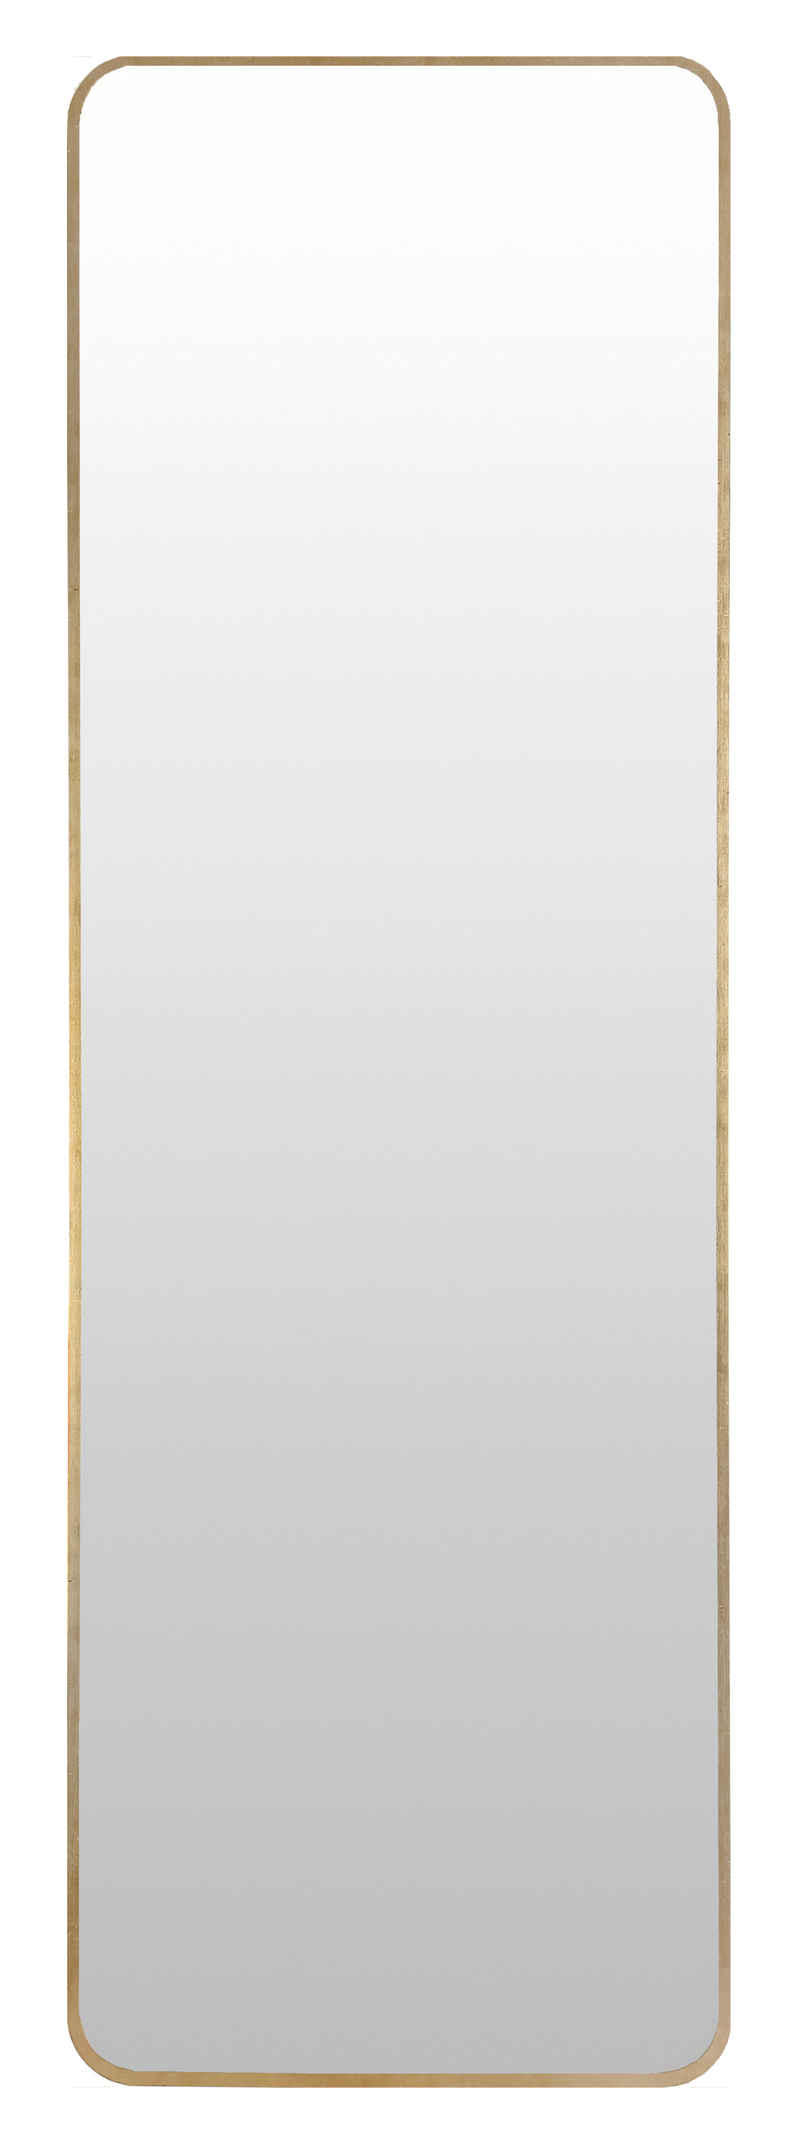 Your-Homestyle Ganzkörperspiegel Spiegel Mia Wandspiegel 40 x 130 cm in Metallrahmen / Alurahmen, Farbe Gold